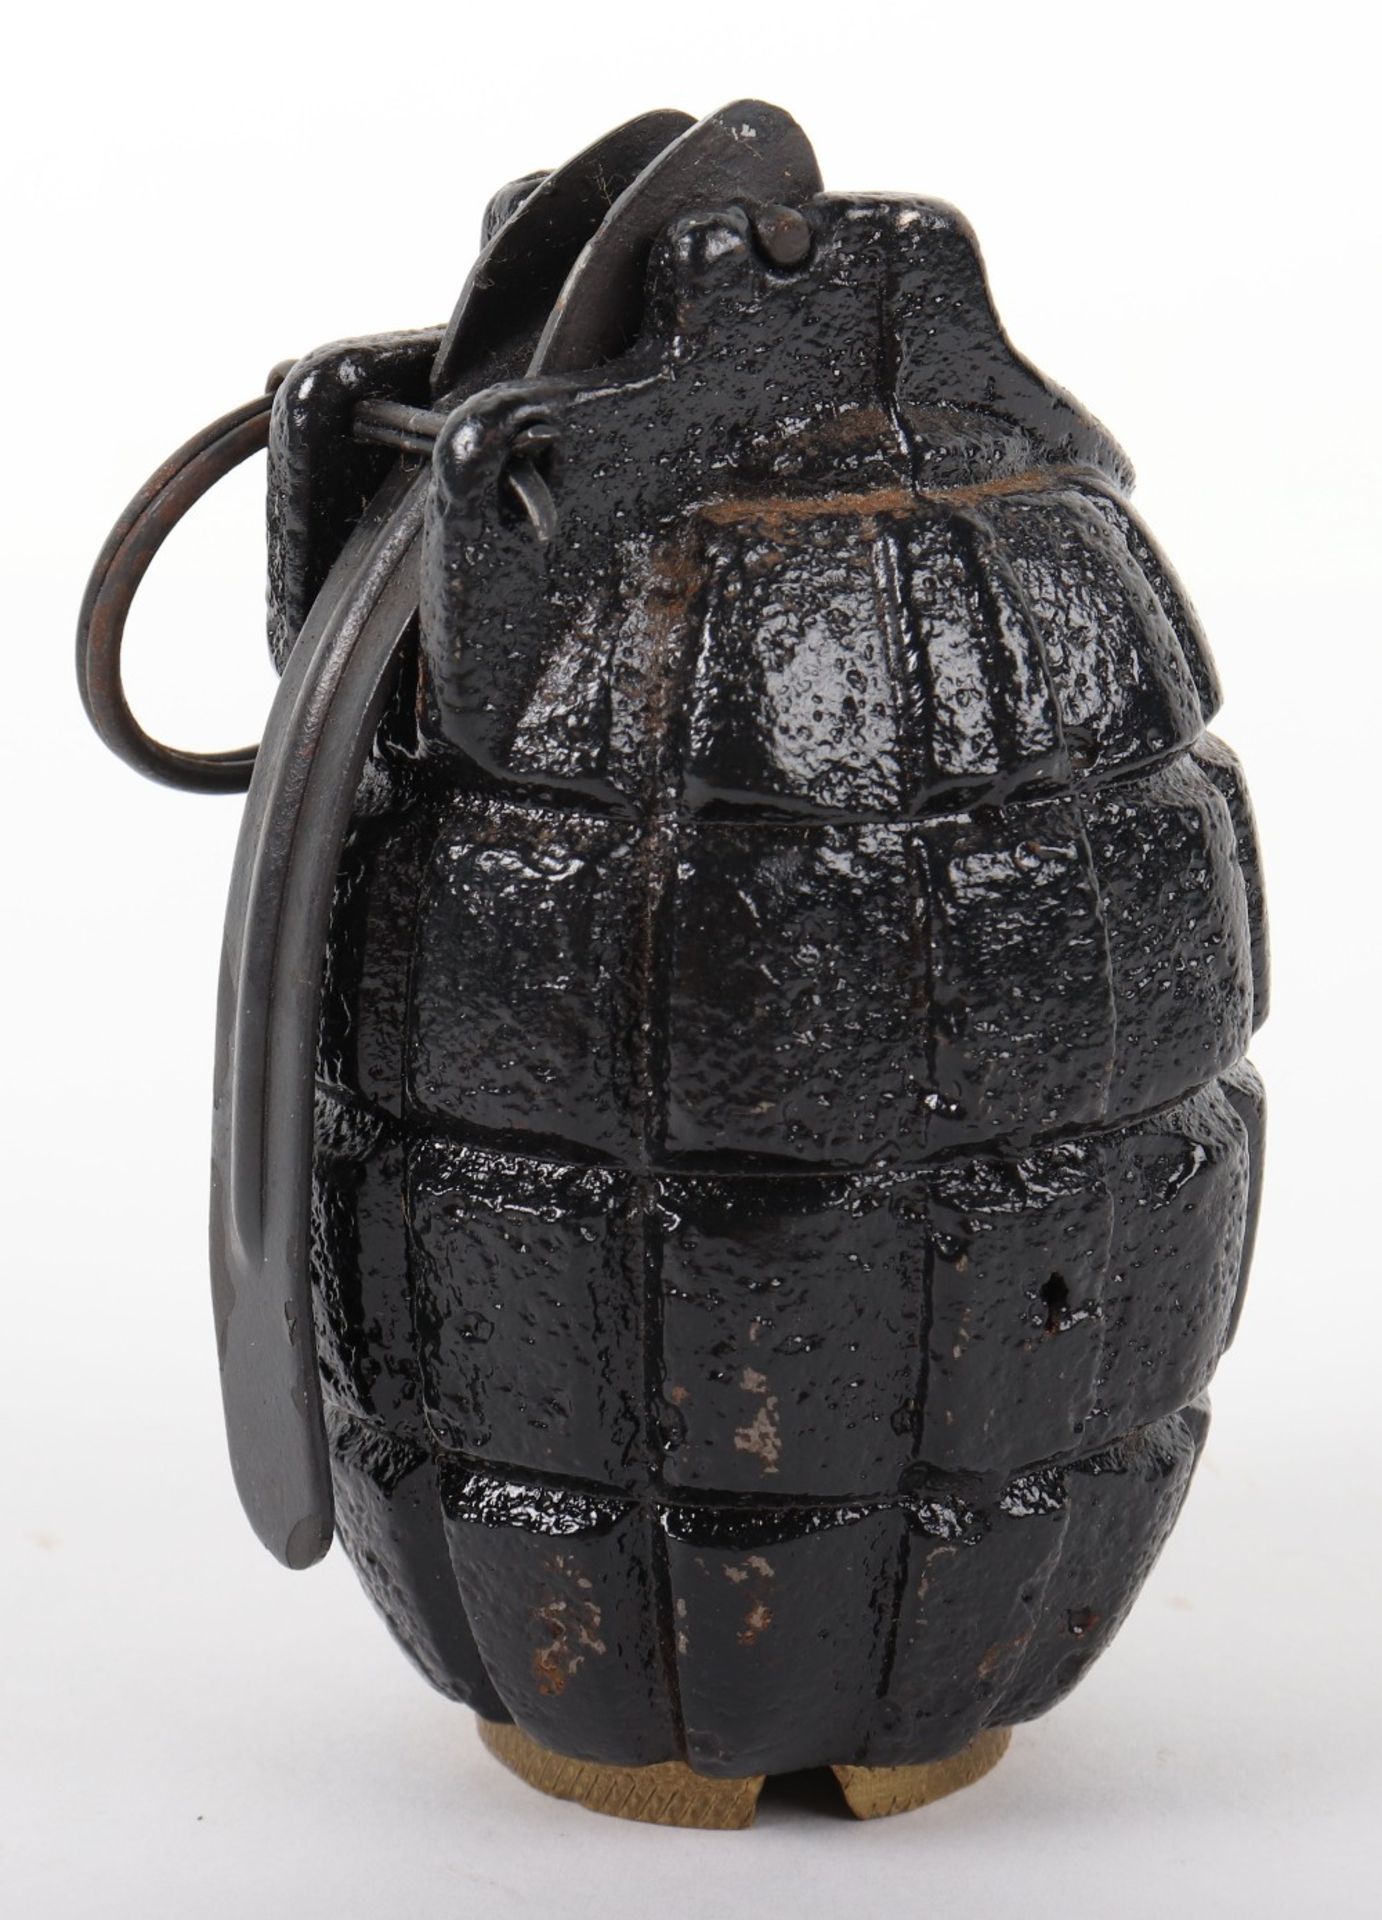 Inert British Mills Grenade - Image 2 of 5